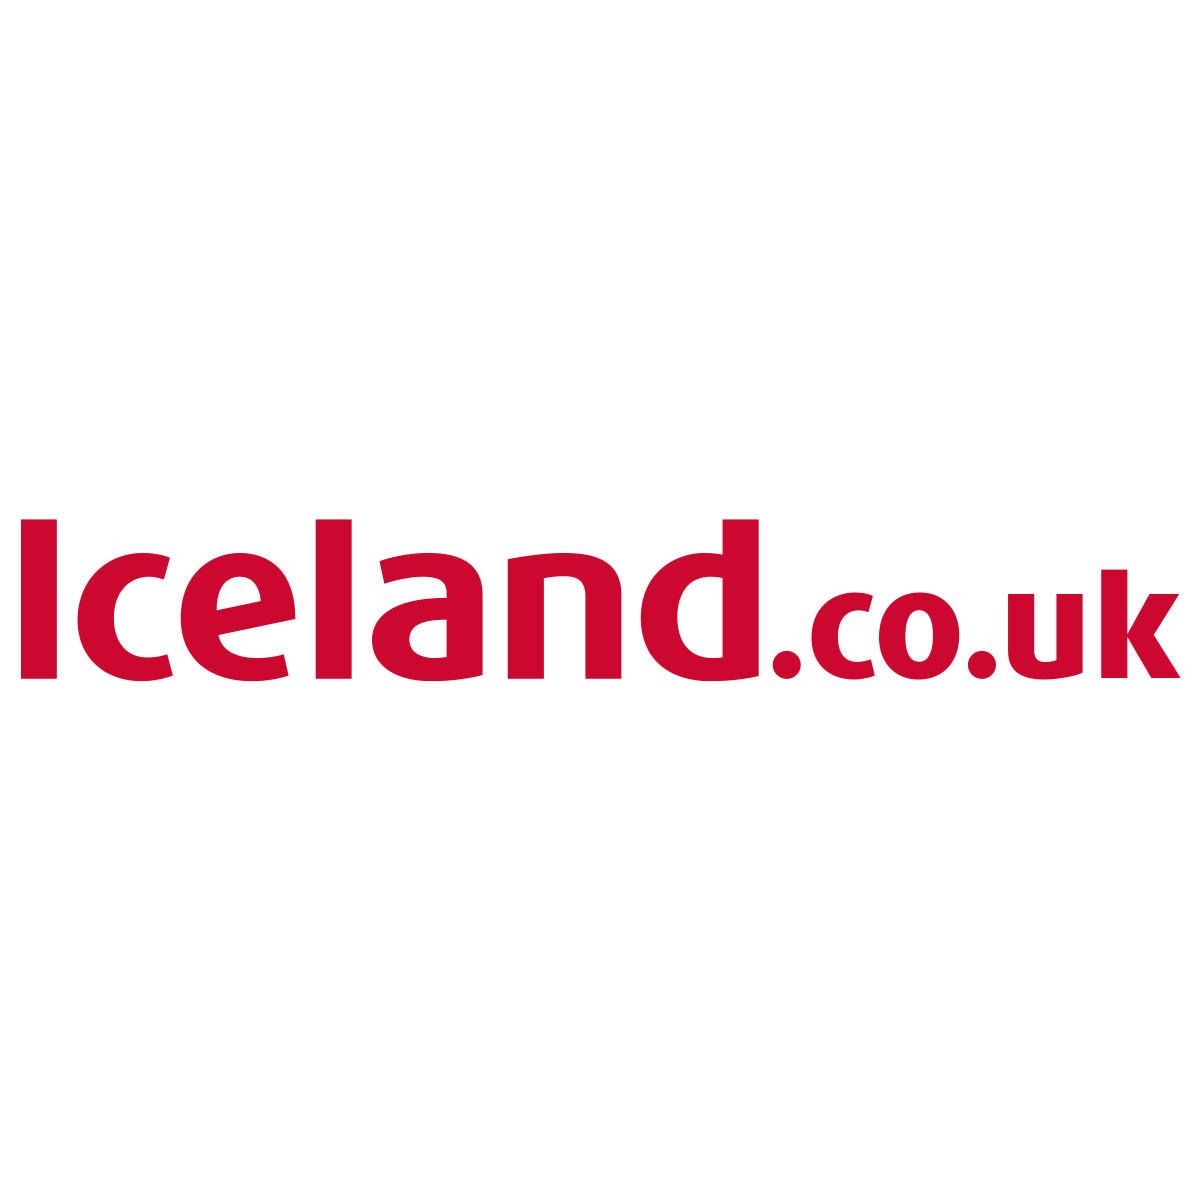 https://assets.iceland.co.uk/i/iceland/iceland-url-logo-1200x1200 Recipe